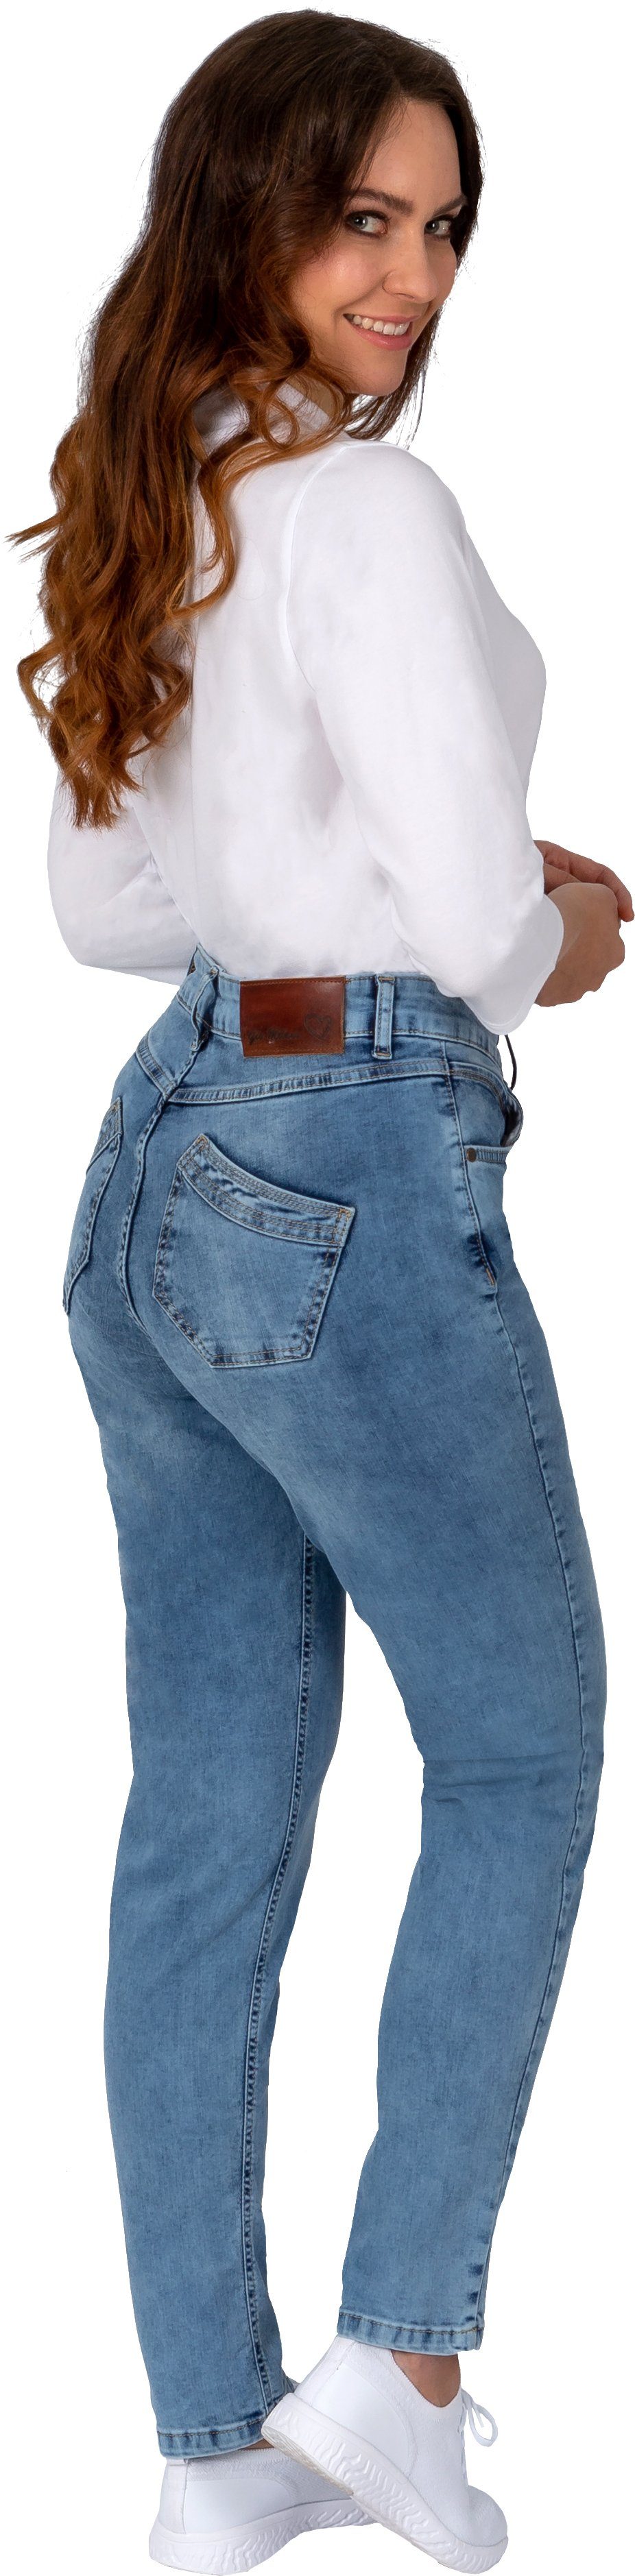 Gesäßtaschen schräg gesetzten Milano mit Gio Gio-Ella 5-Pocket-Jeans